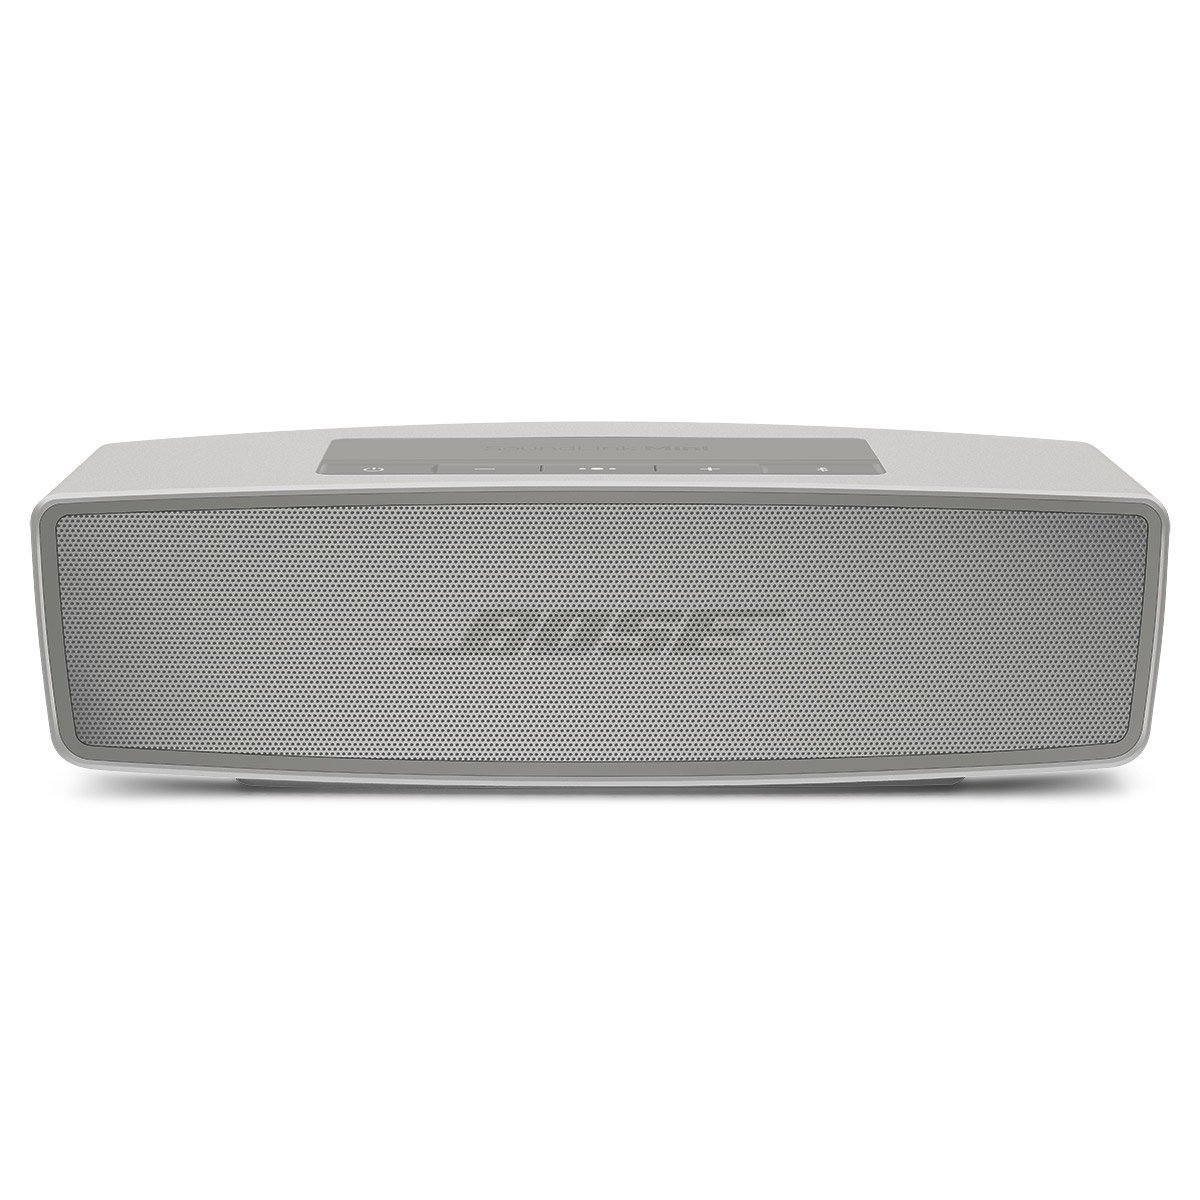 Bose Bluetooth Boxen Test: Ratgeber & Vergleich was taugen die Boxen wirklich?